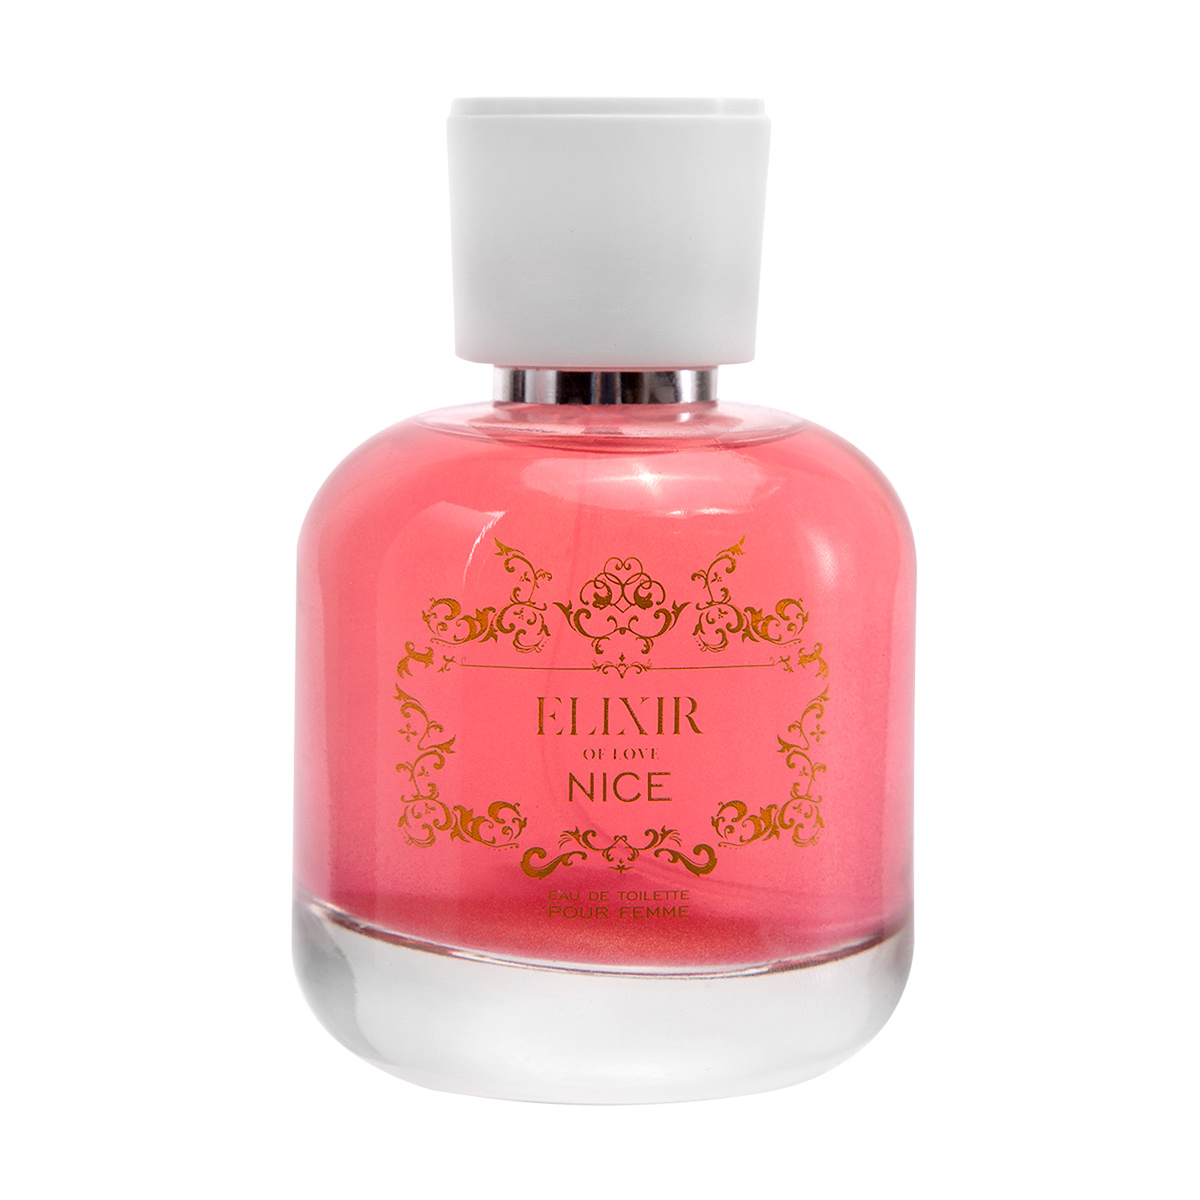 elixir of love набор женского парфюма 2 в 1 с шиммером Набор женского парфюма Elixir с шиммером (3 шт. по 100 мл)